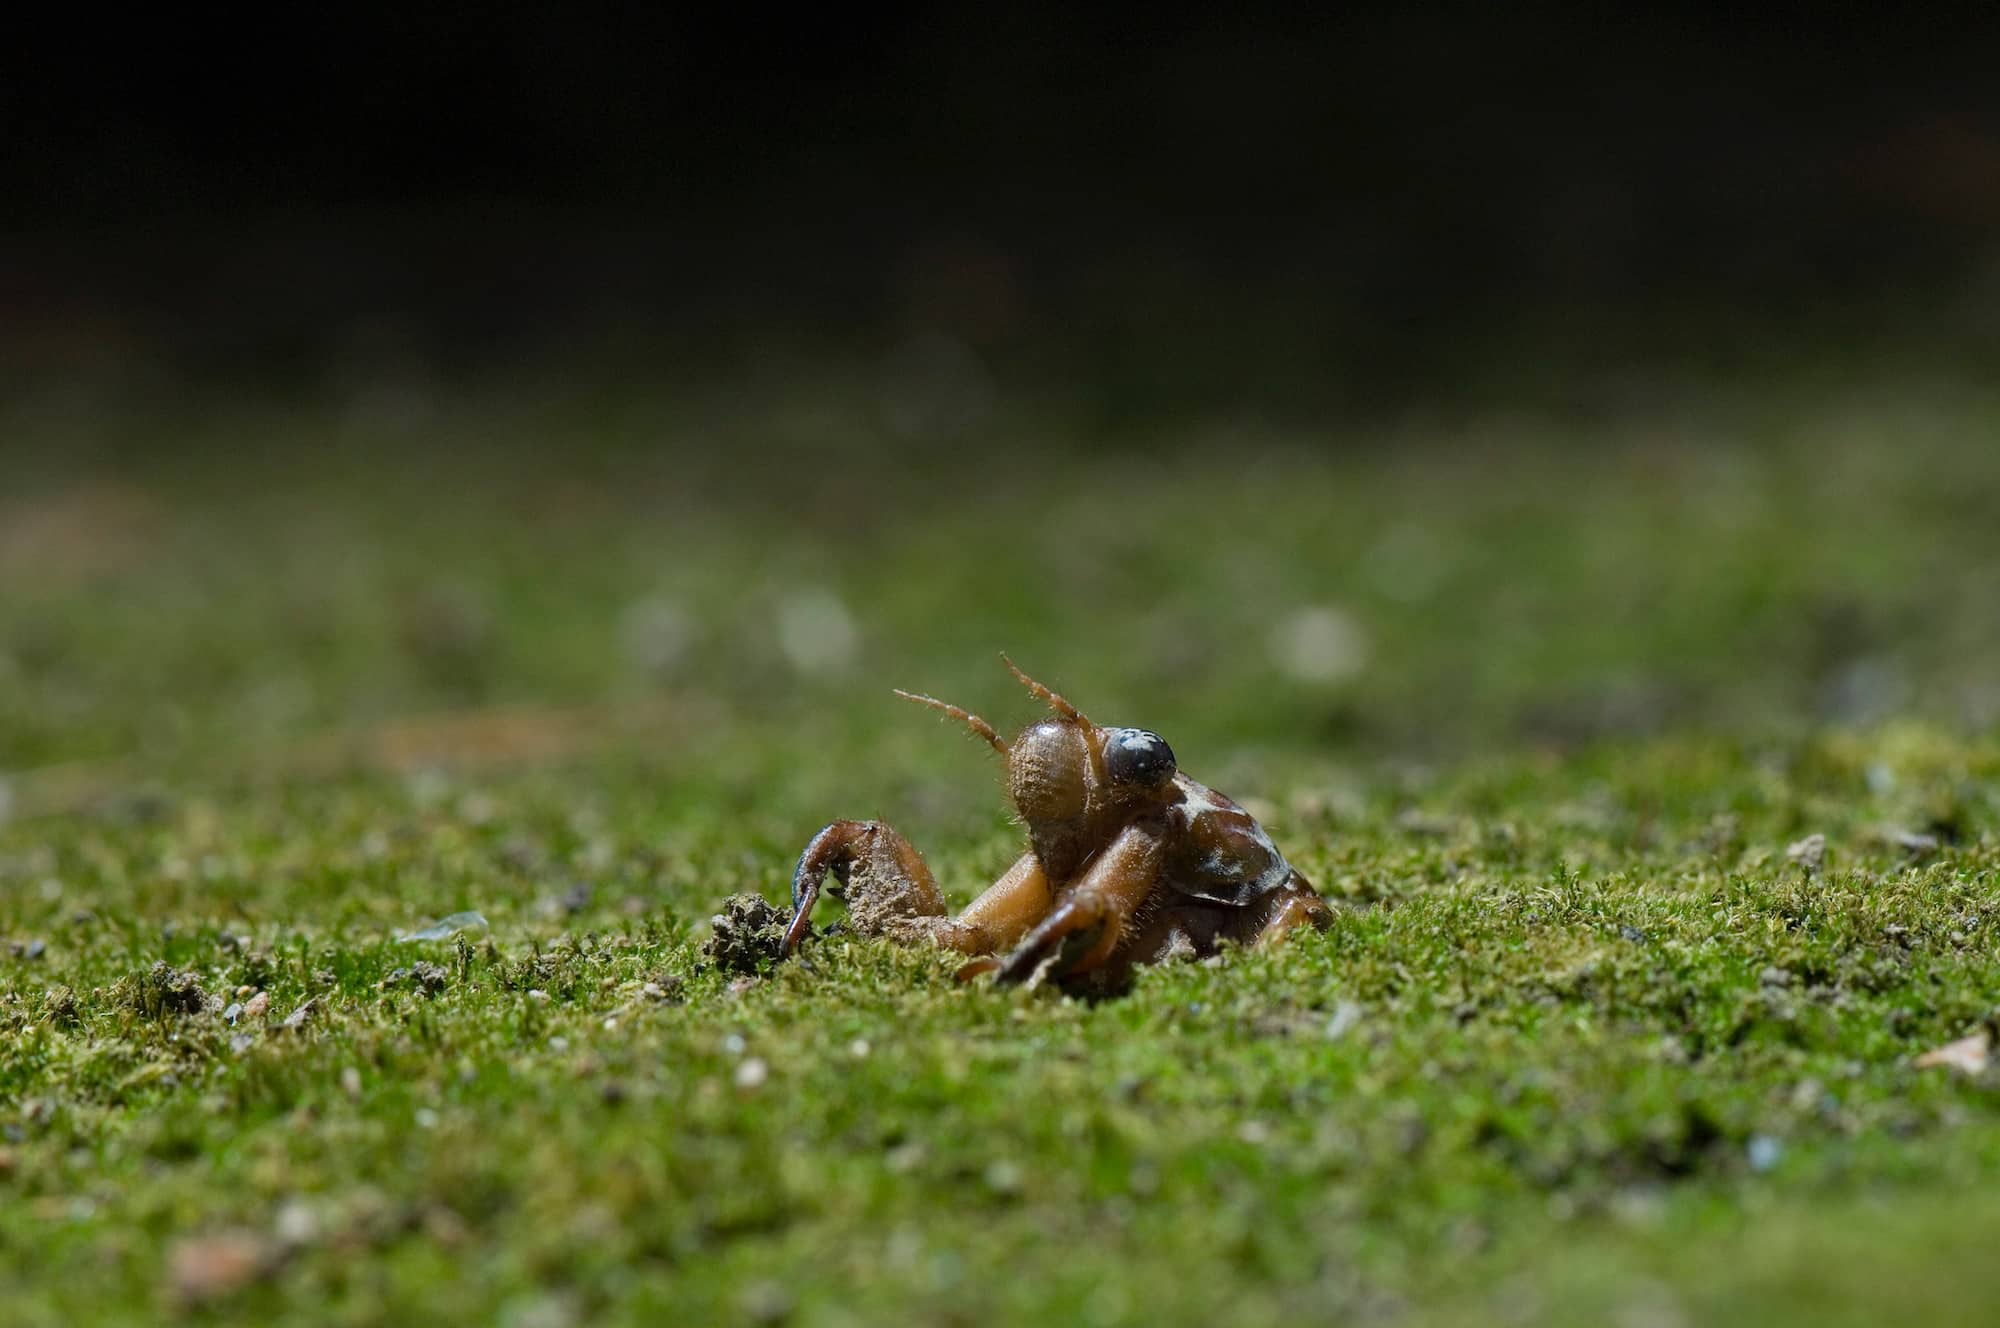 セミの幼虫は土の中に何年いる プチペディア で迫る 昆虫 植物 動物のヒミツ アマナとひらく 自然 科学 のトビラ Nature Science